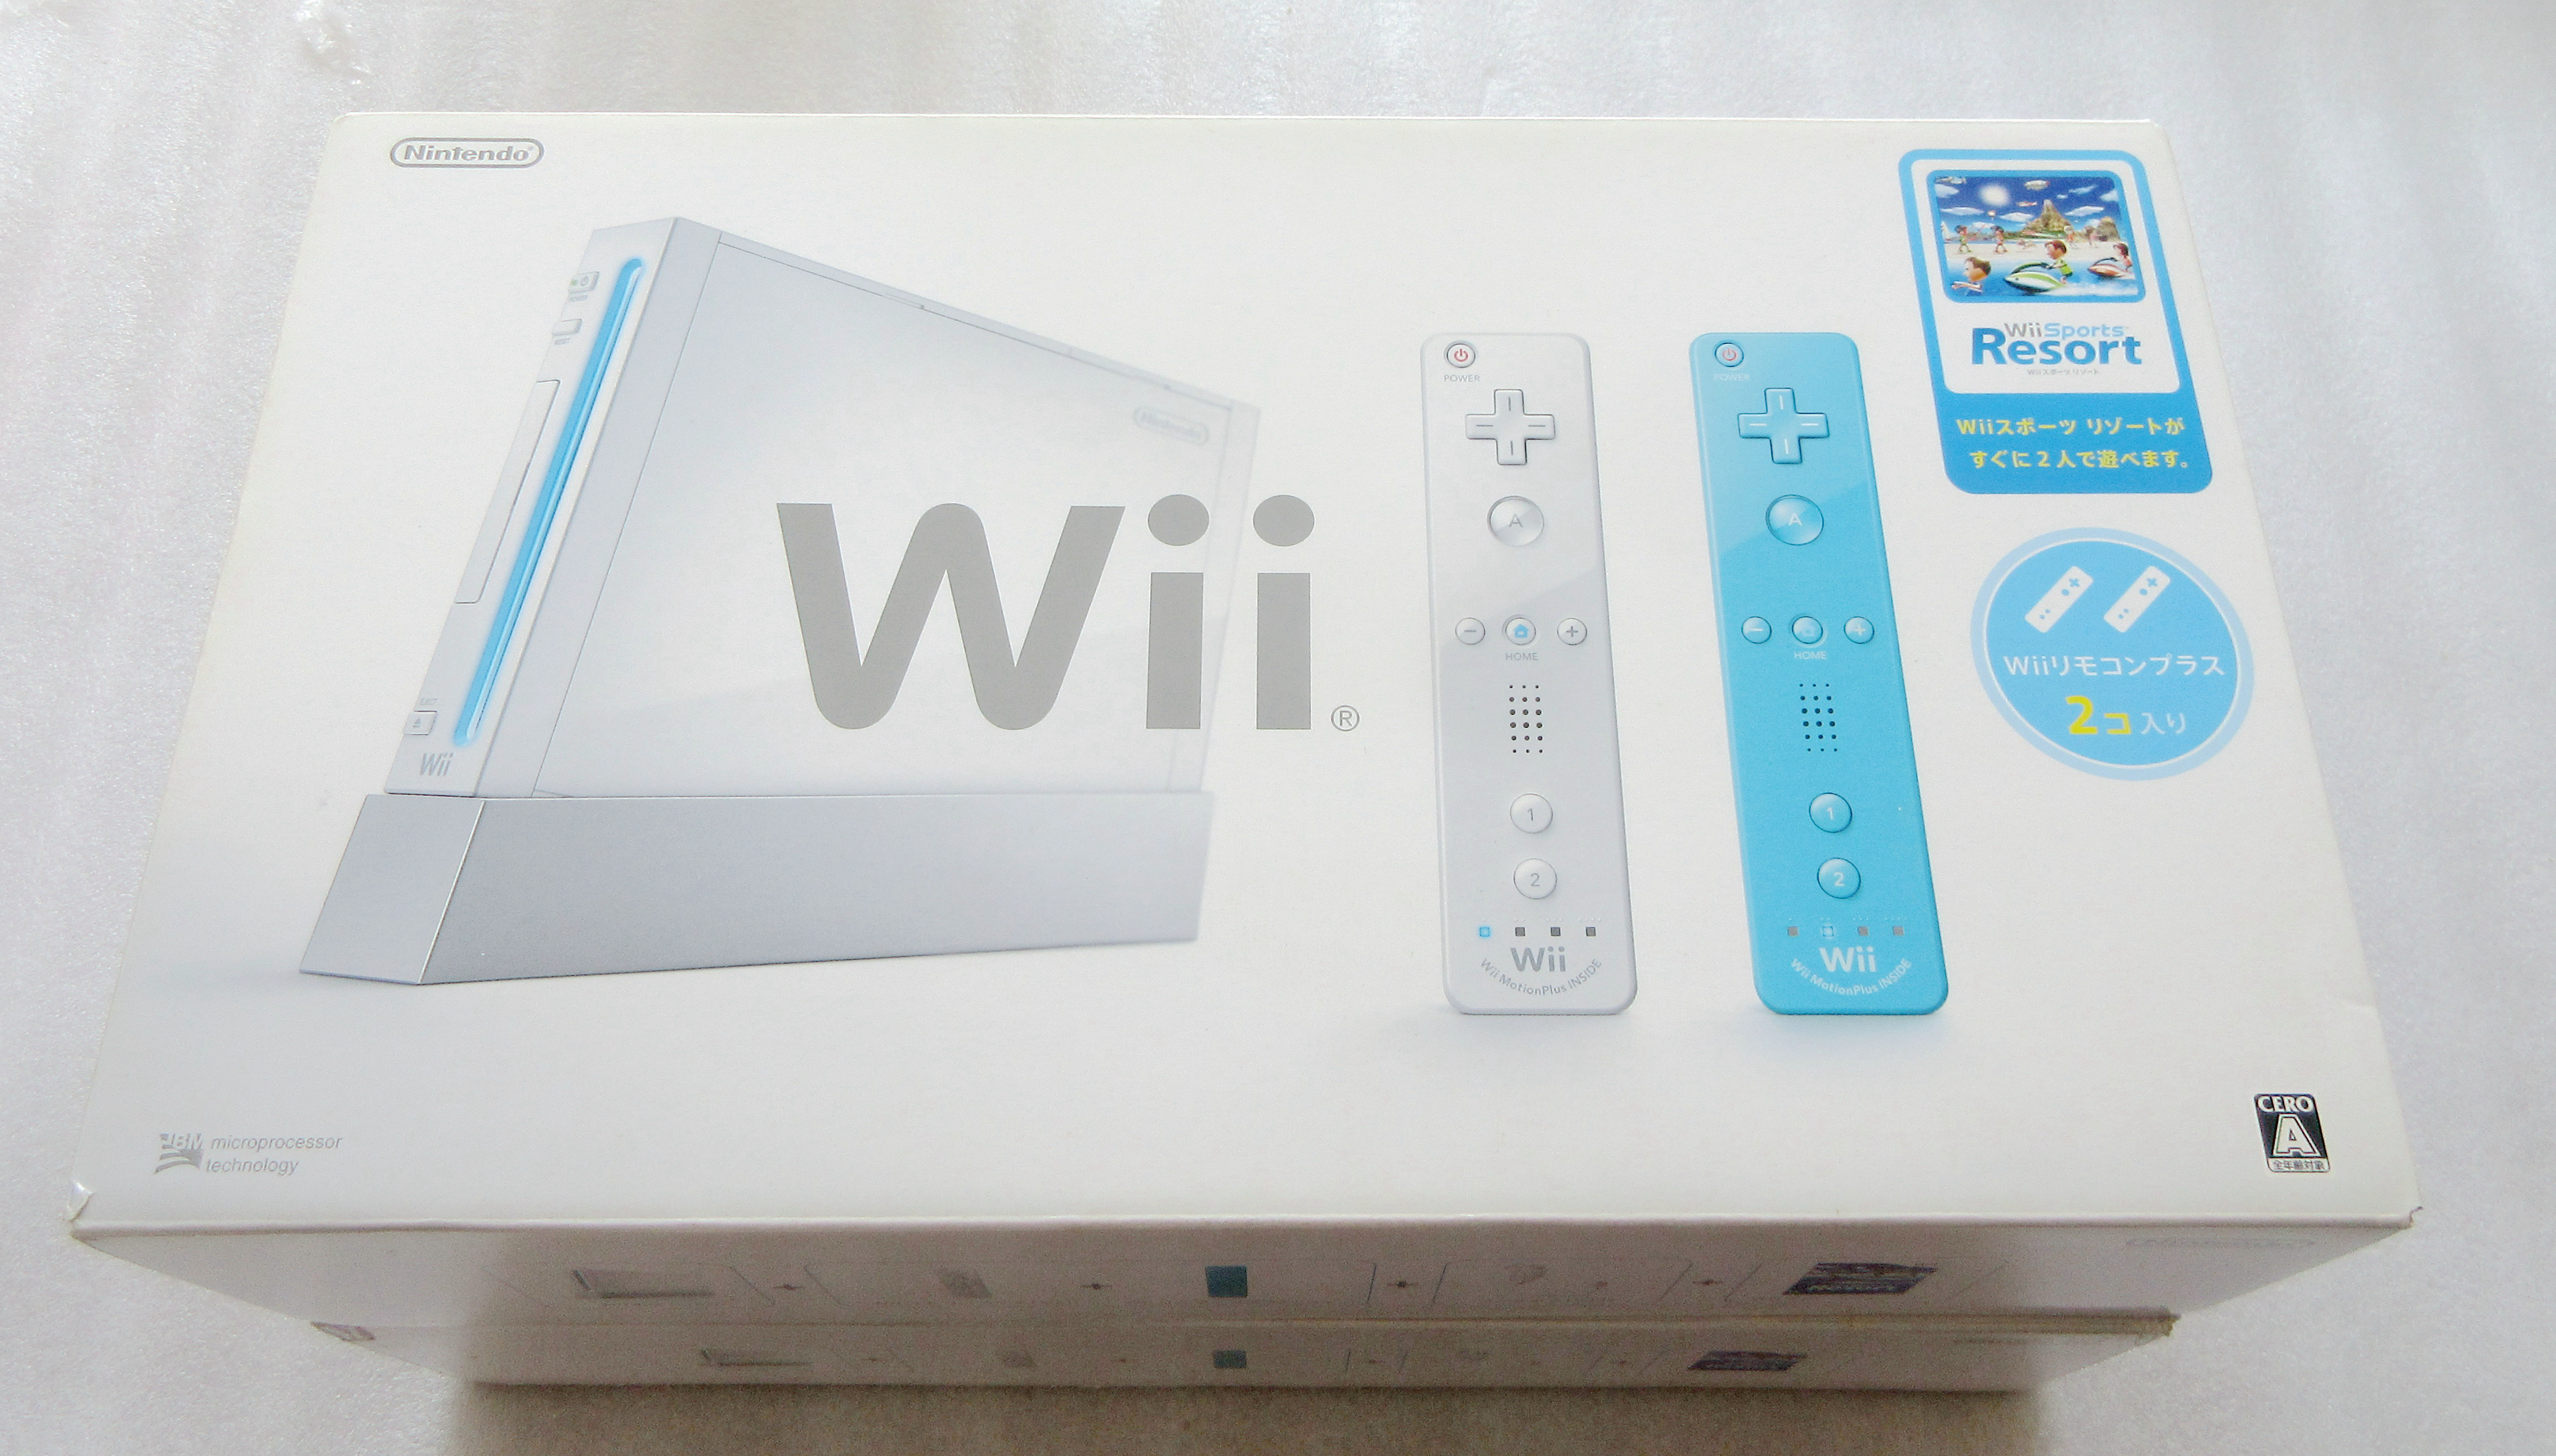 Wii游戏机价格 Wii游戏机下载 Wii游戏机哪里买 价钱 淘宝海外